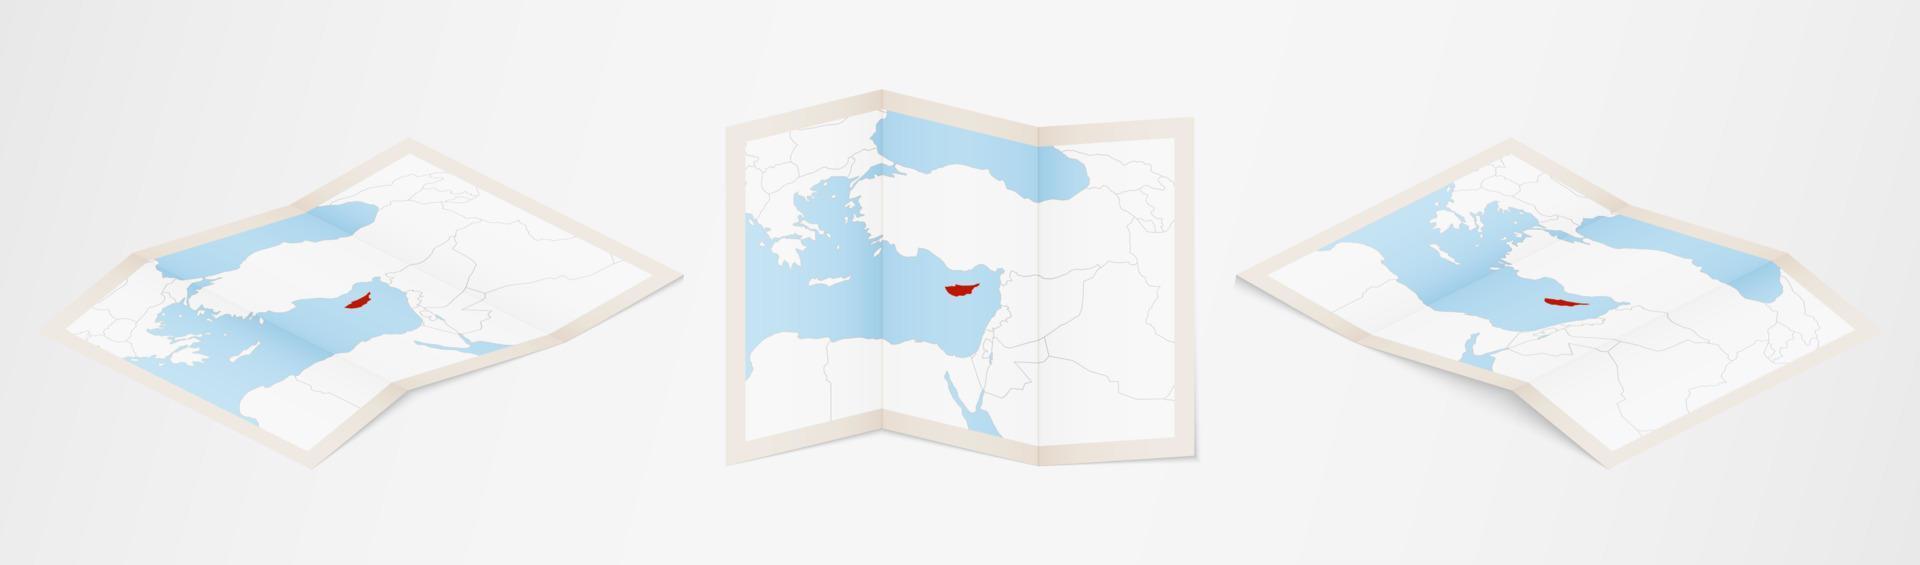 Faltkarte von Zypern in drei verschiedenen Versionen. vektor